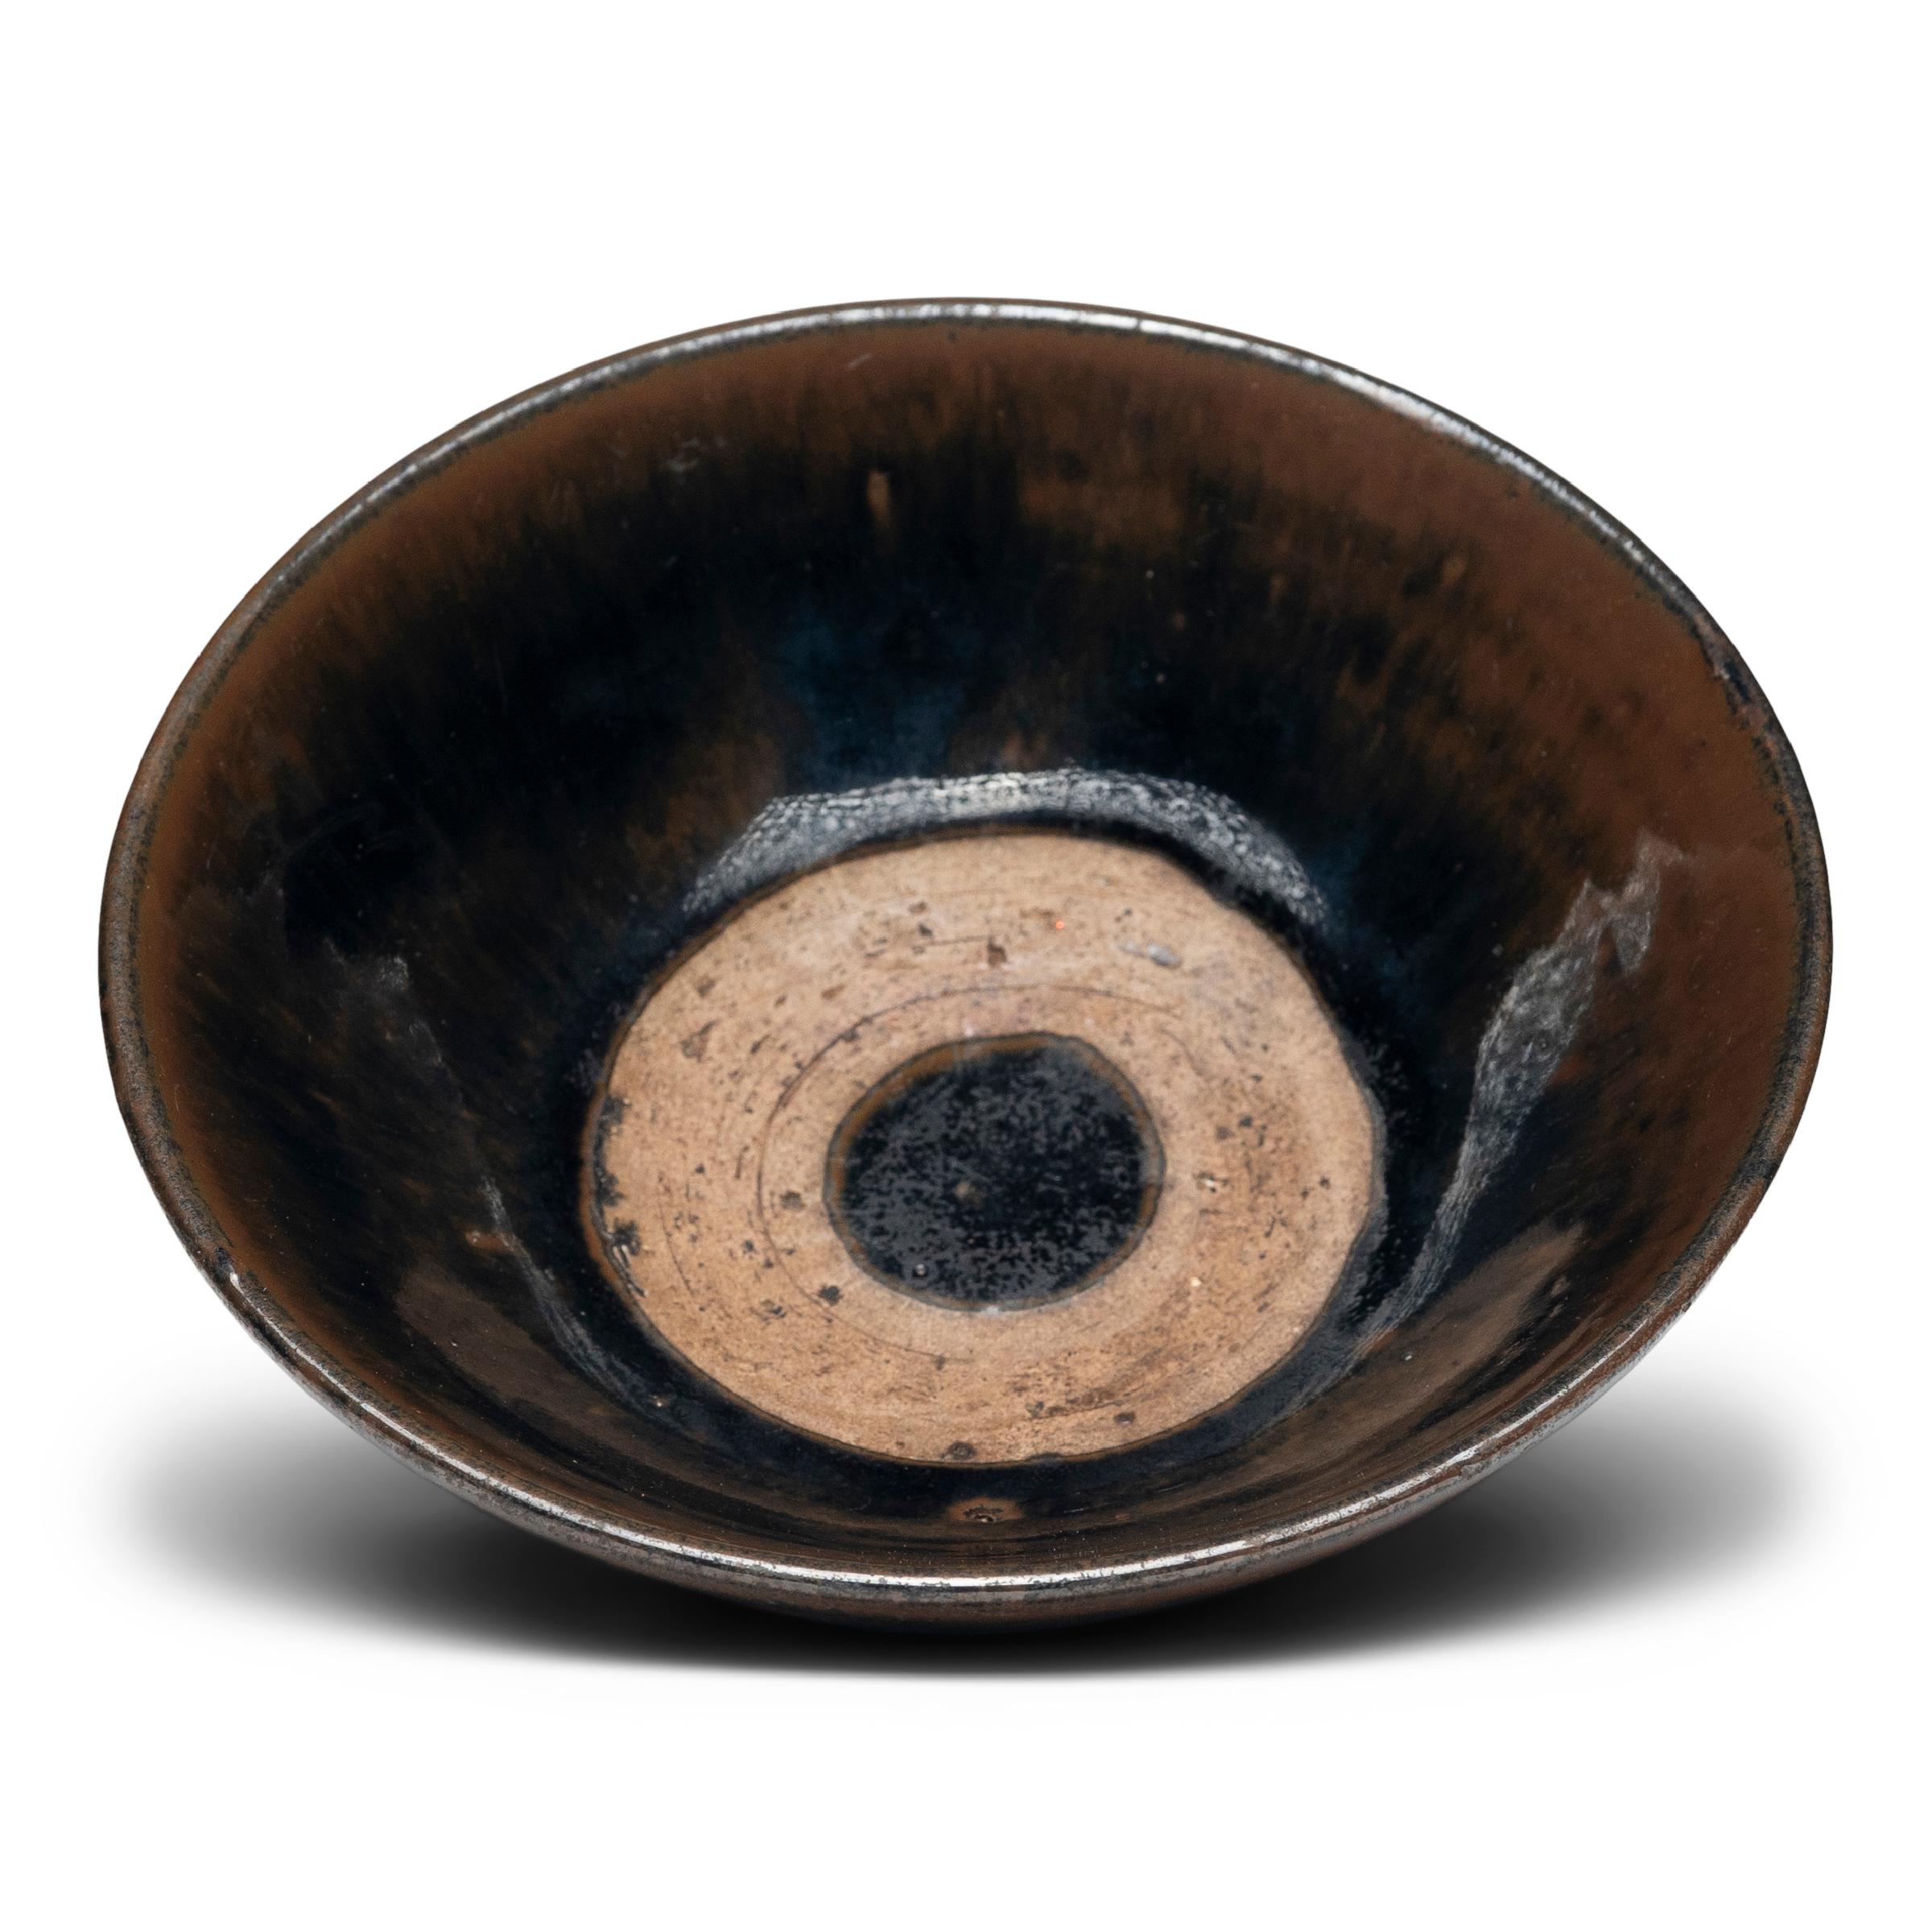 Qing Dark Glazed Chinese Rice Bowl, c. 1850